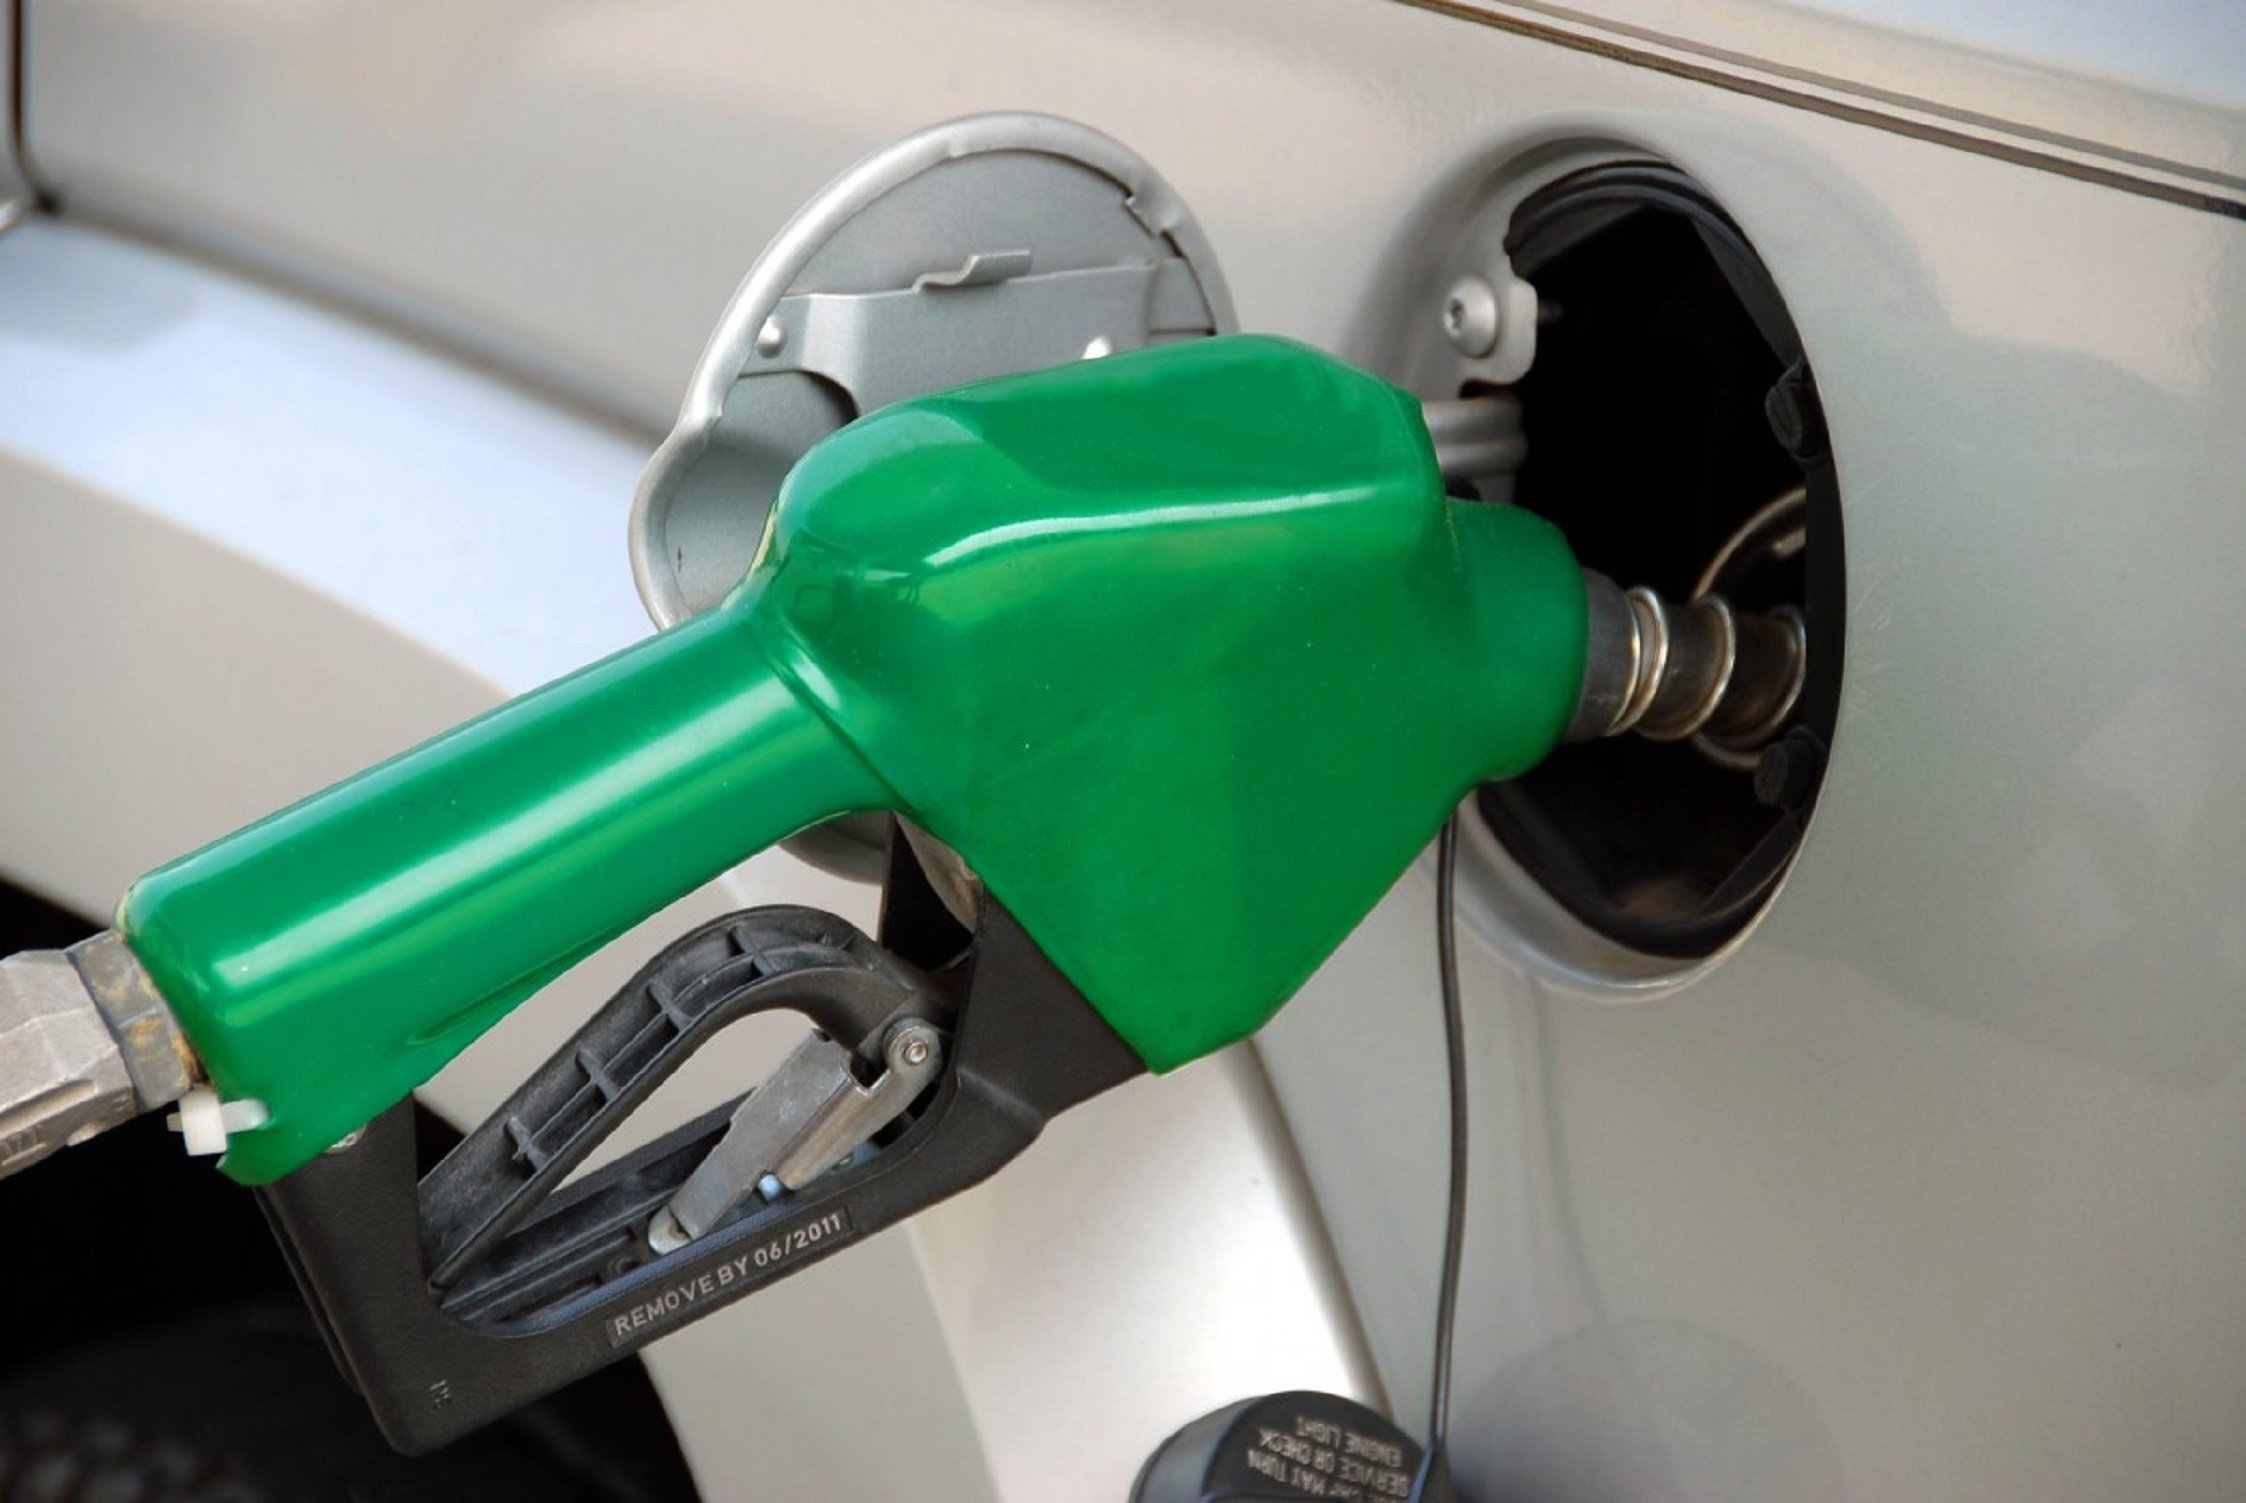 10 trucs per estalviar gasolina que has de posar en pràctica ja